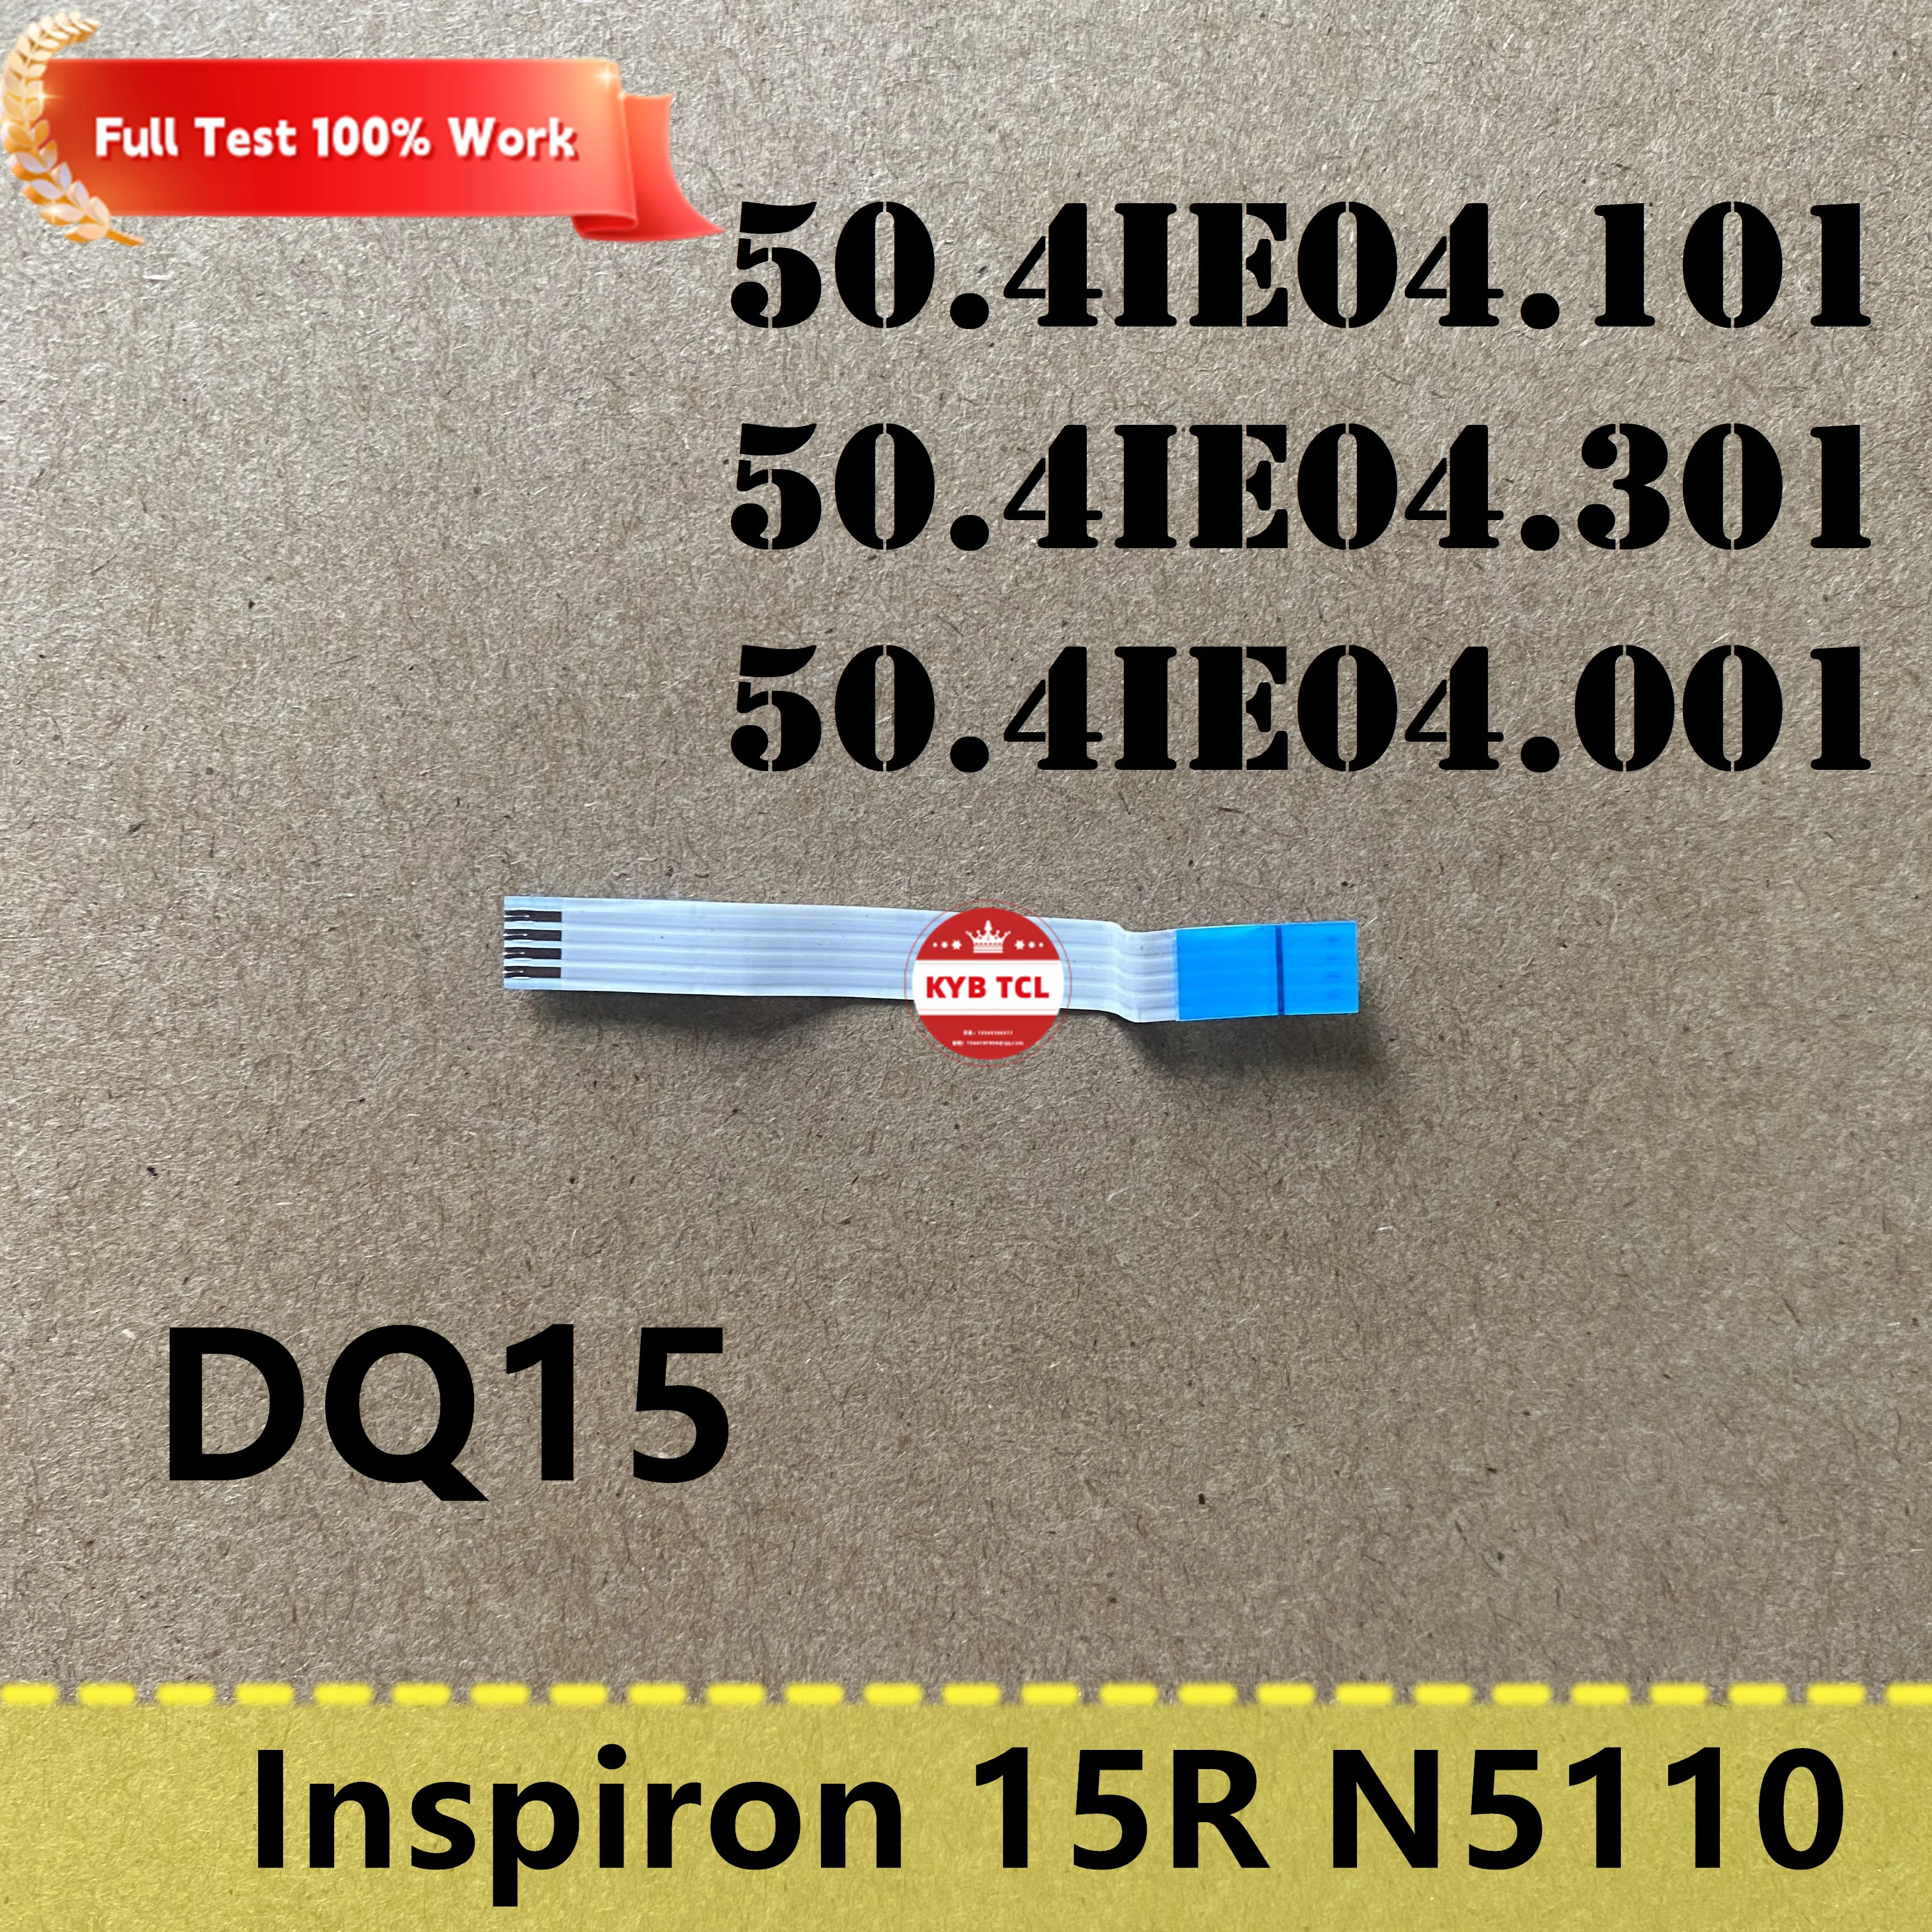 

Dell Inspiron 15R N5110 подлинный ленточный трос для ноутбука DQ15 50.4IE04.001 50.4IE04.101 50.4IE04.301